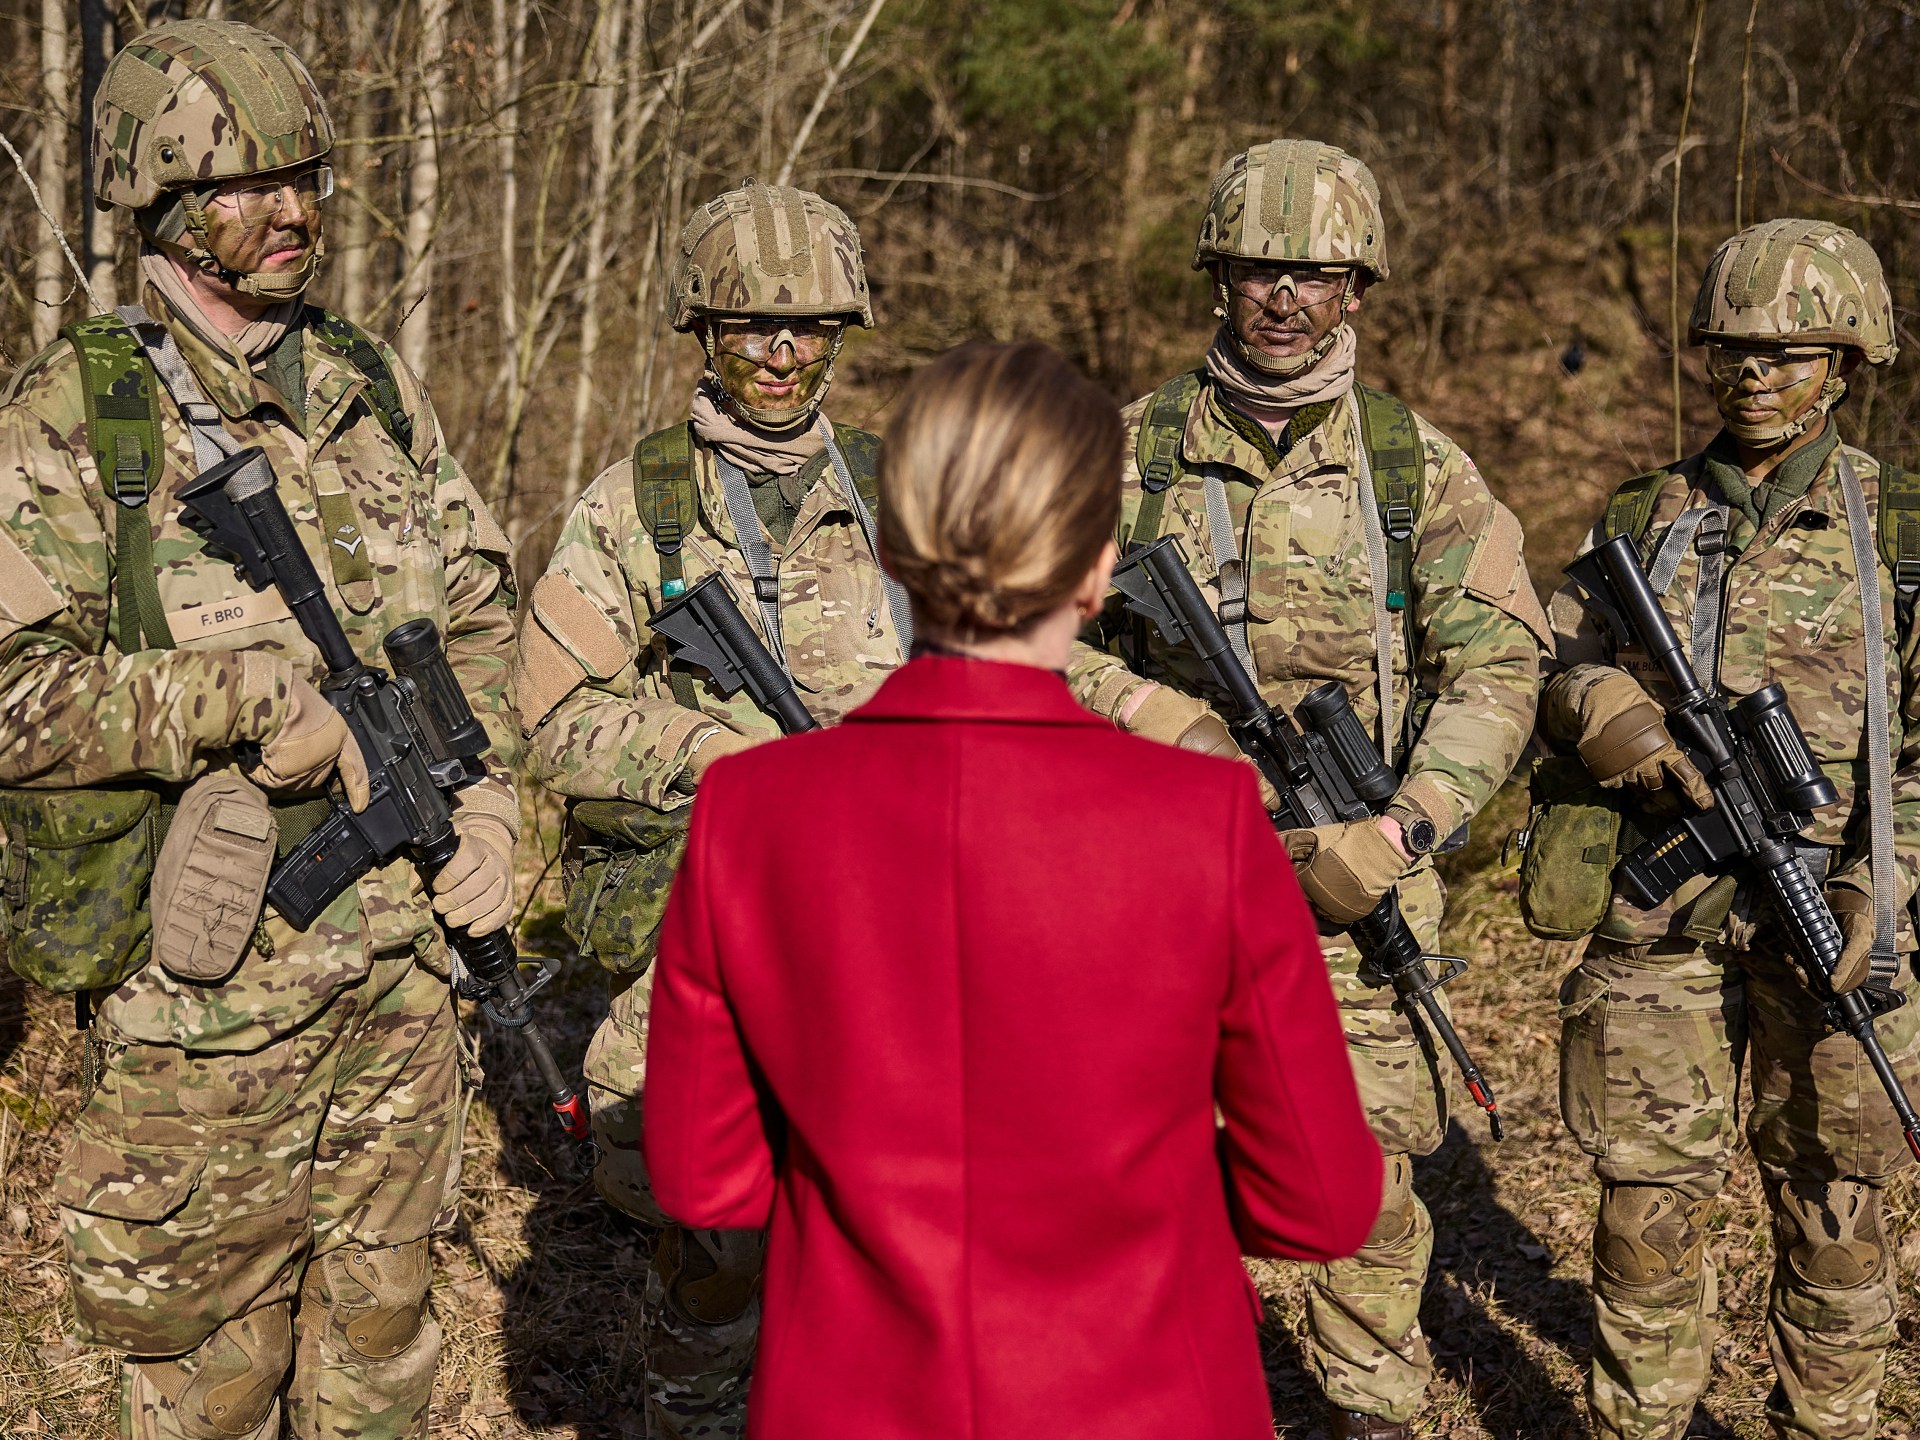 Dinamarca recluta por primera vez mujeres en las fuerzas armadas |  noticias militares